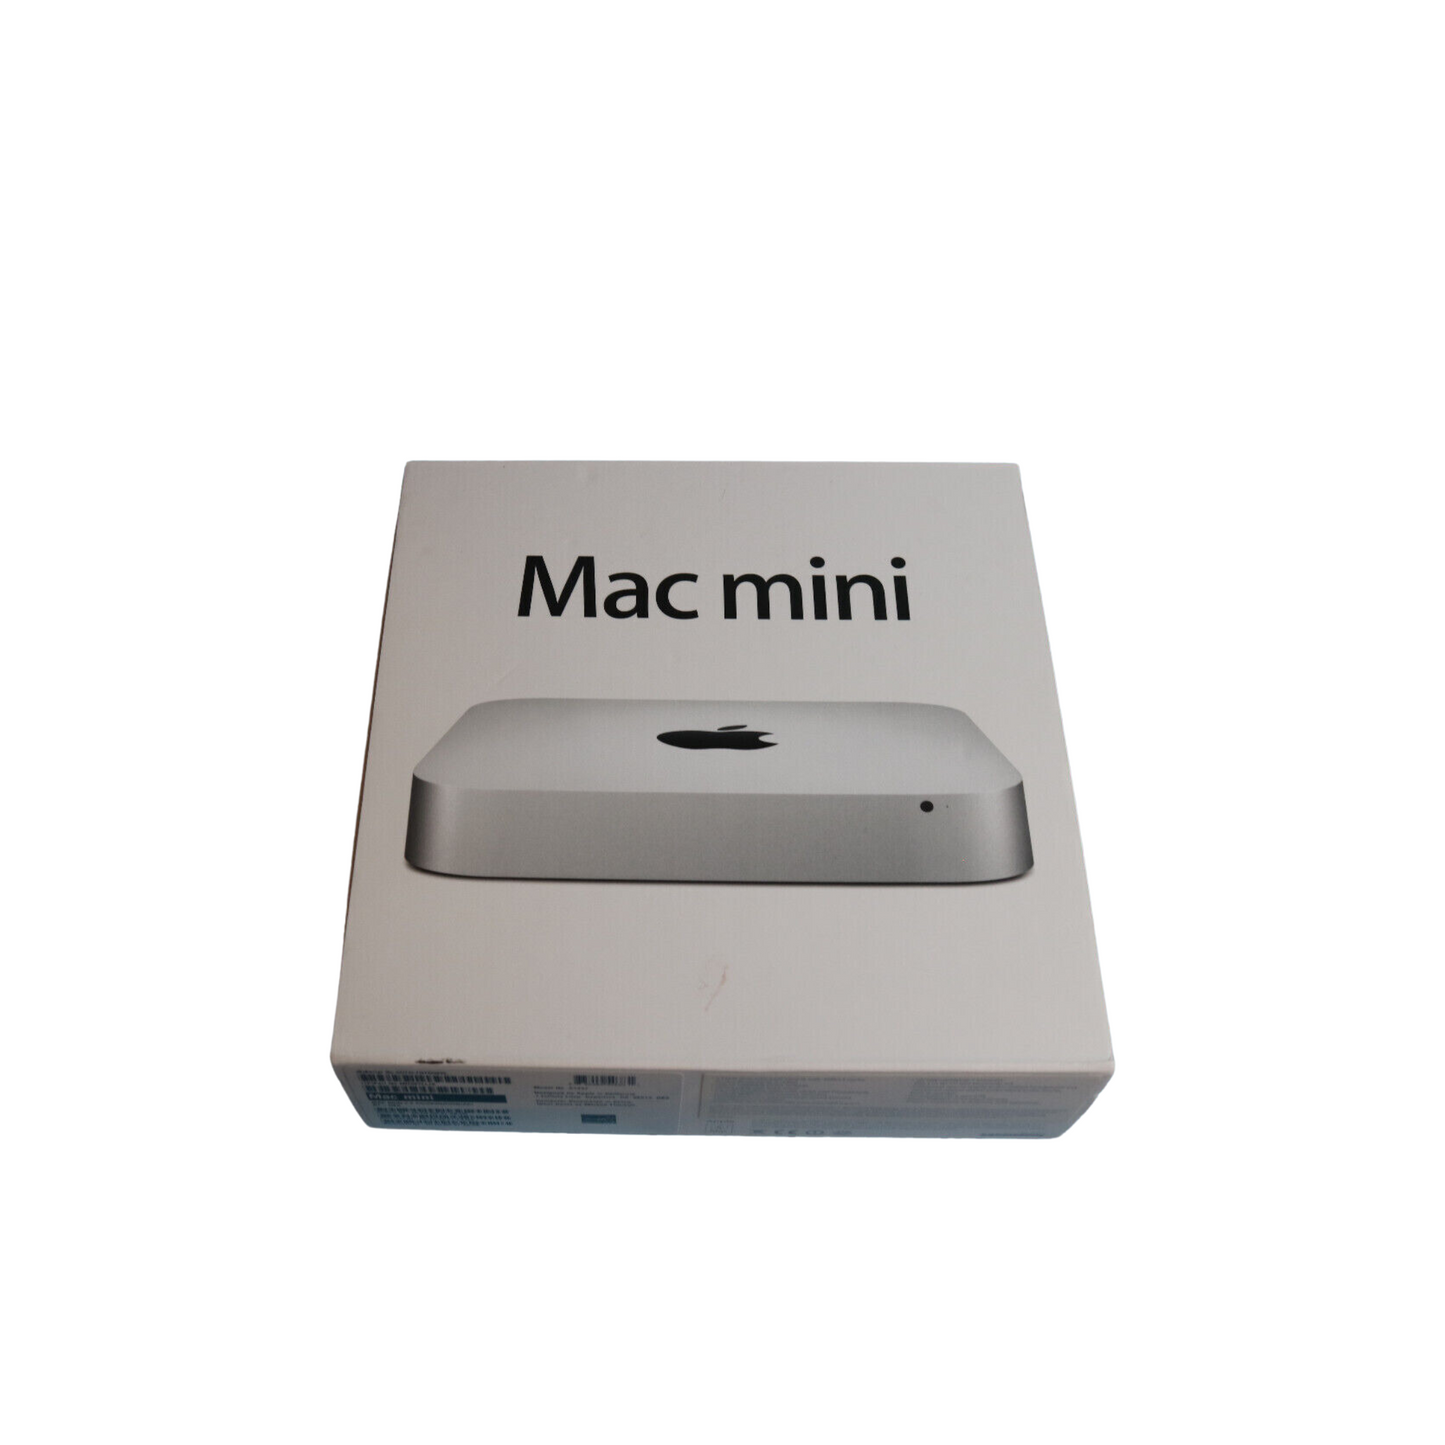 Apple Mac mini A1347 Desktop (October, 2012) - Customized